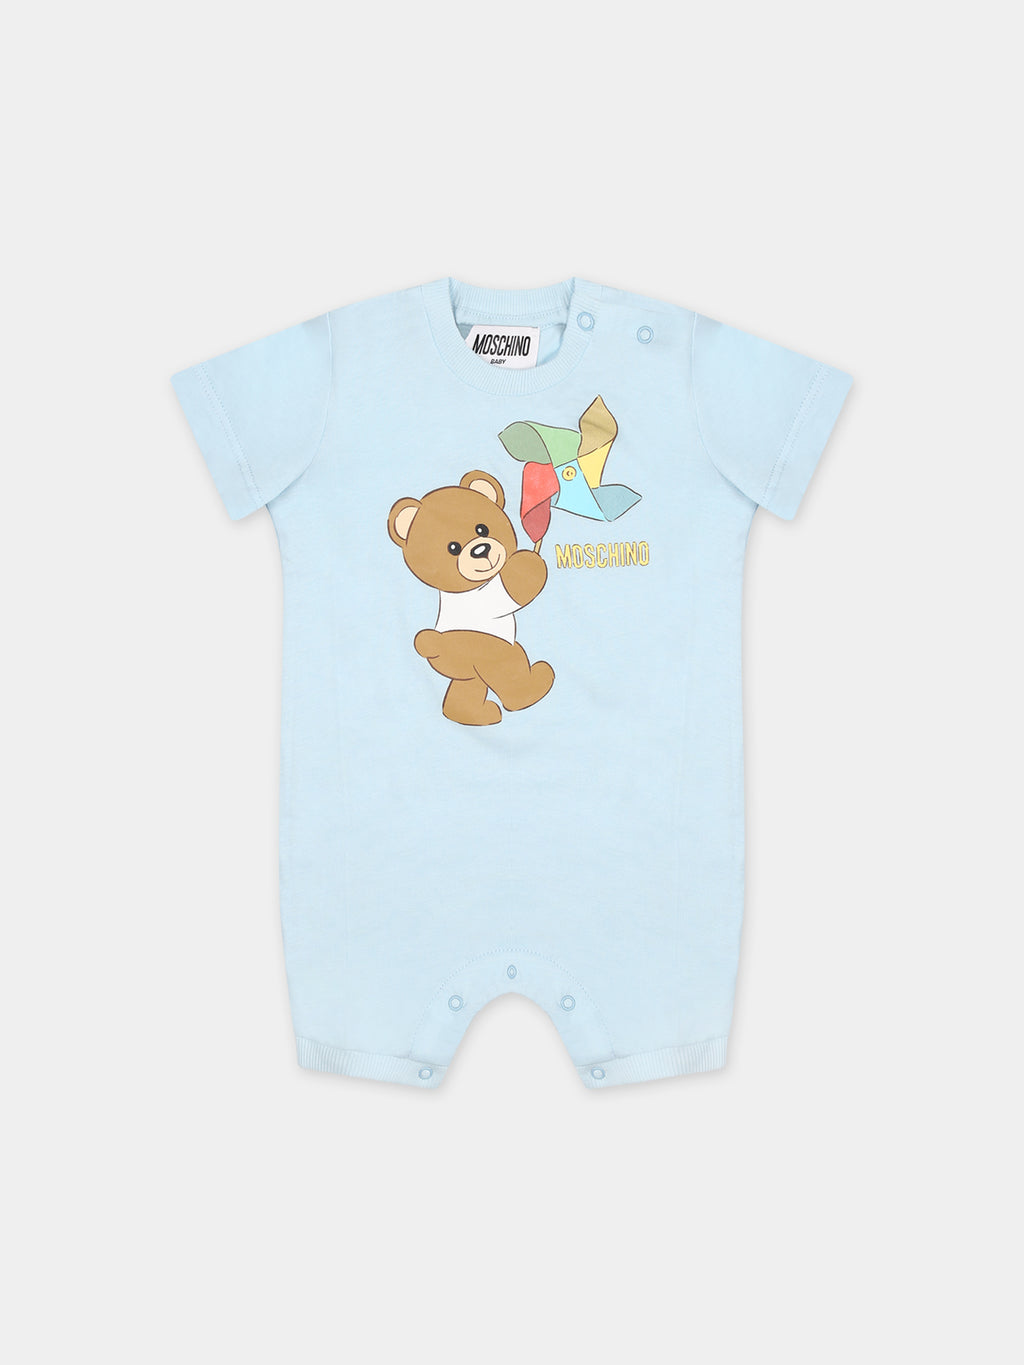 Combinaison bleu clair pour bébé garçon avec Teddy Bear et moulinet